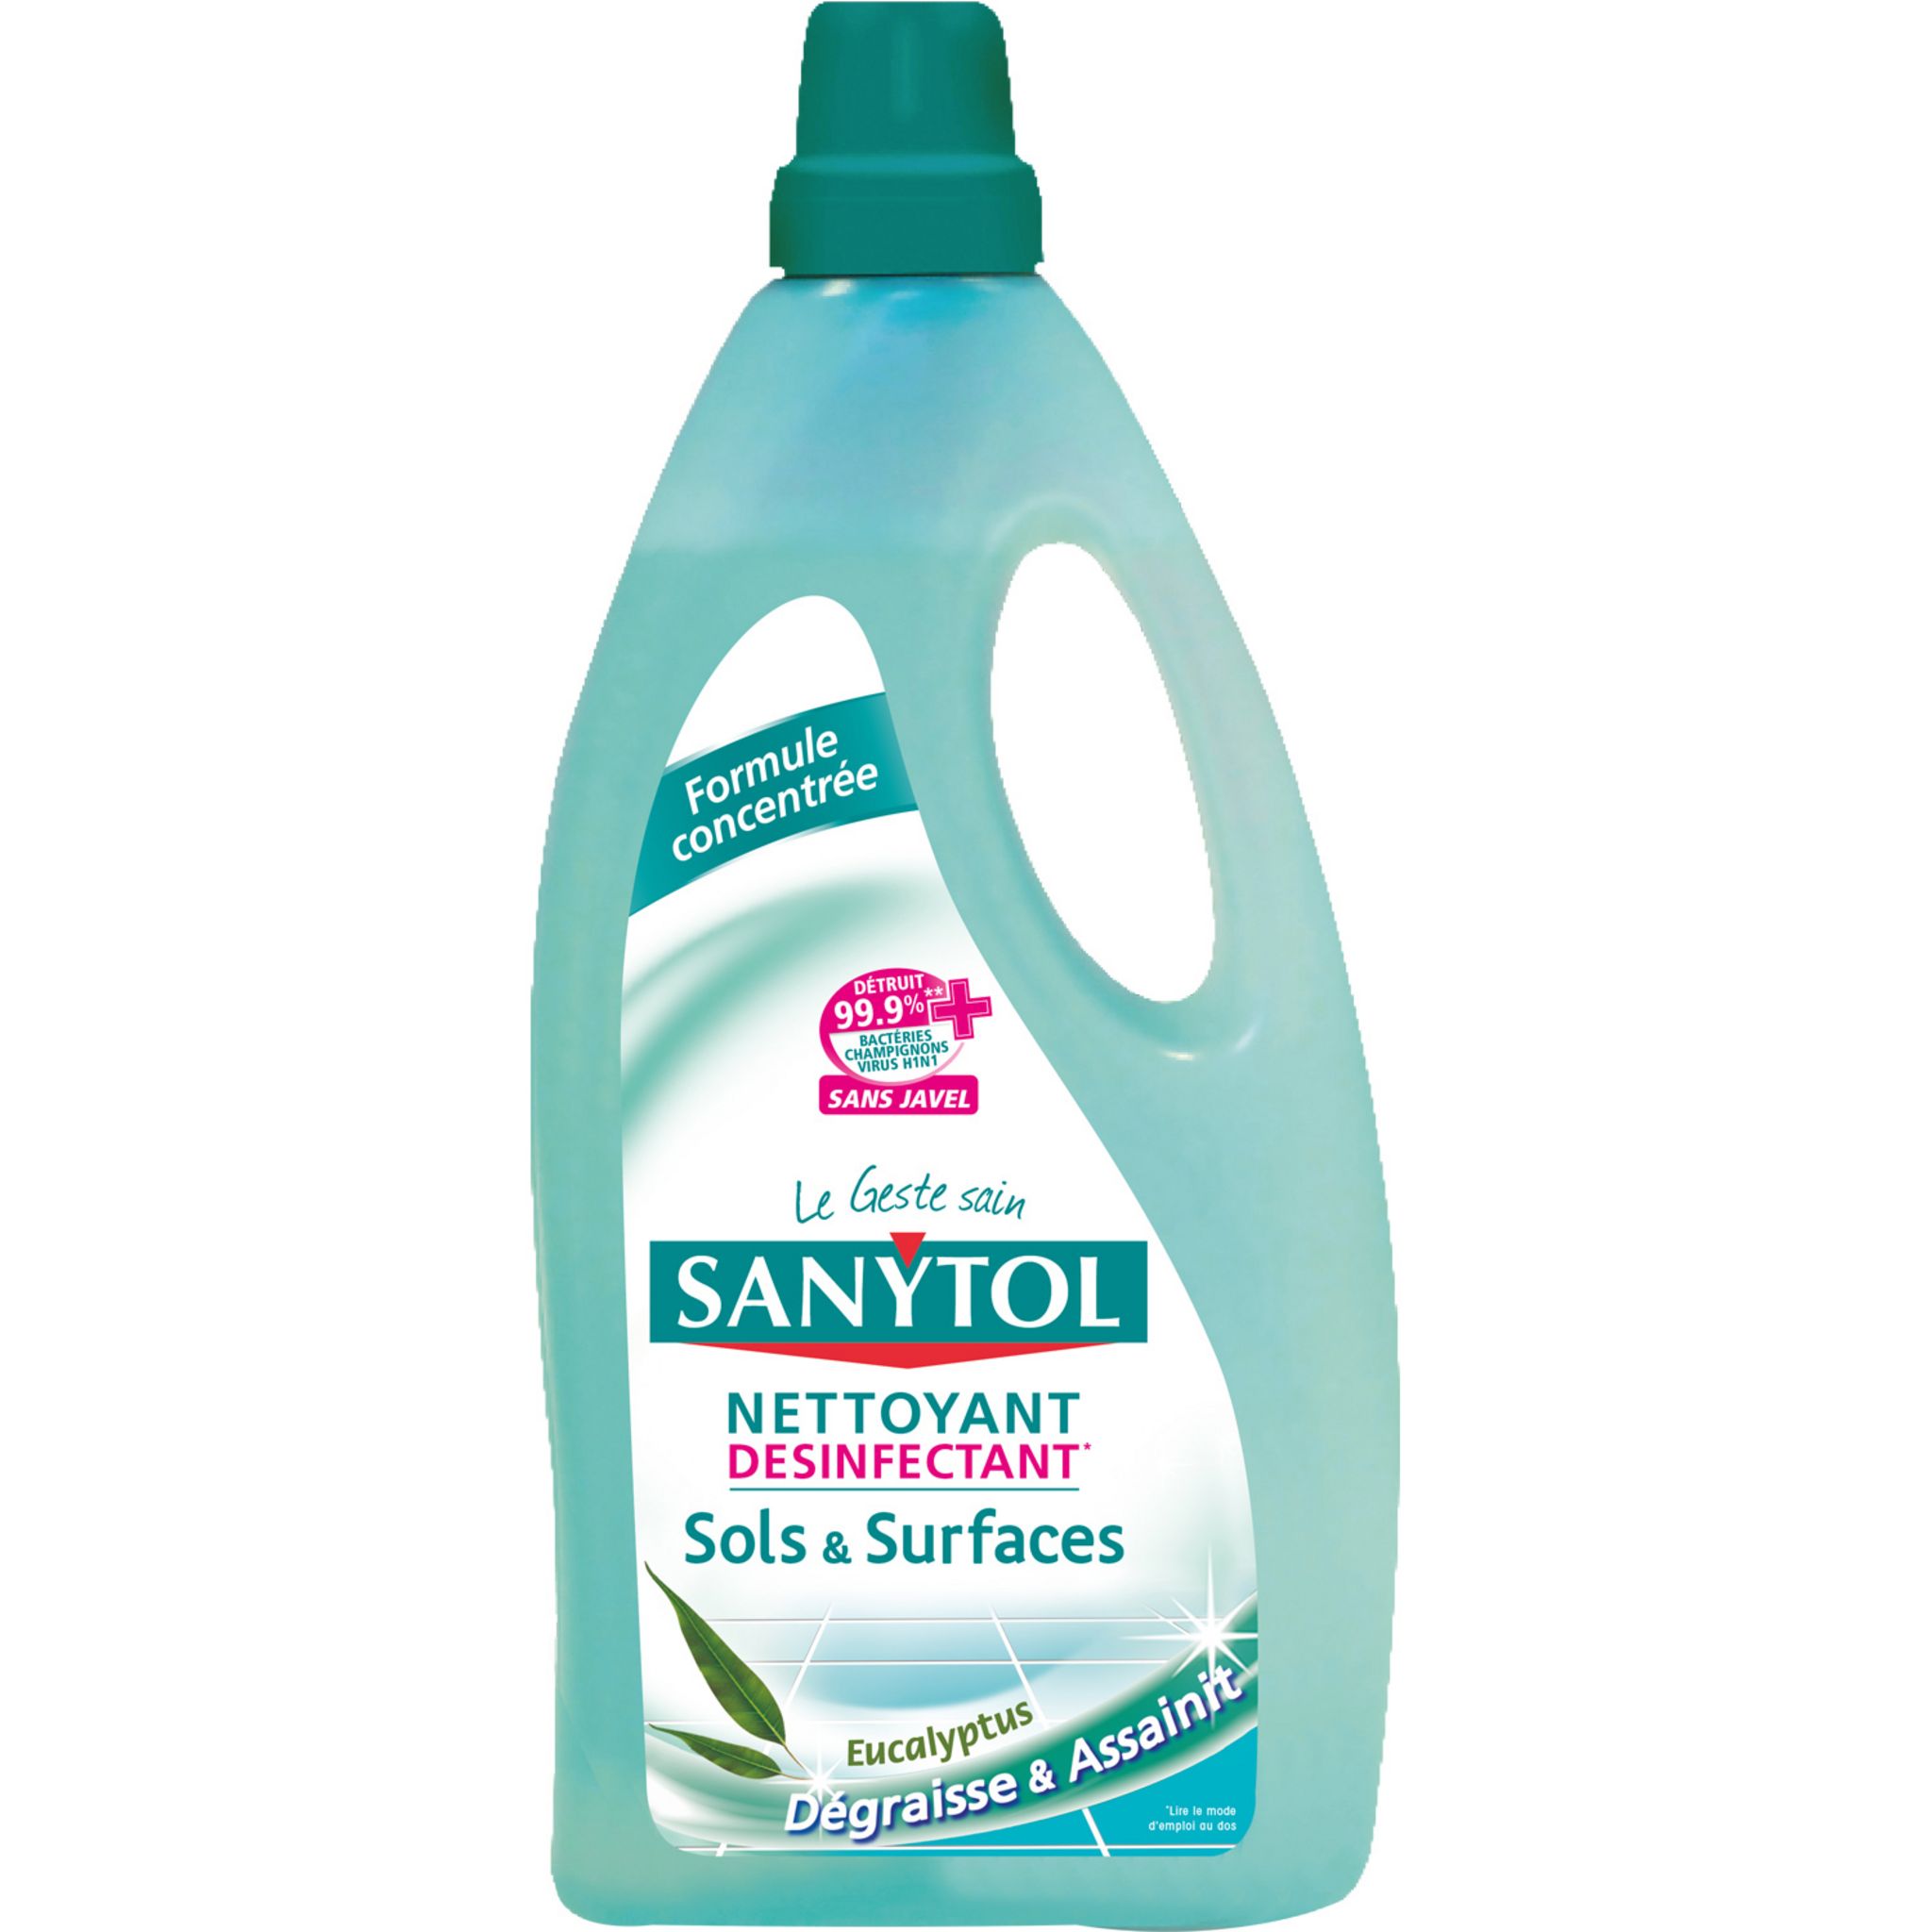 Sanytol : Des produits nettoyants / désinfectants efficaces ? - Avis